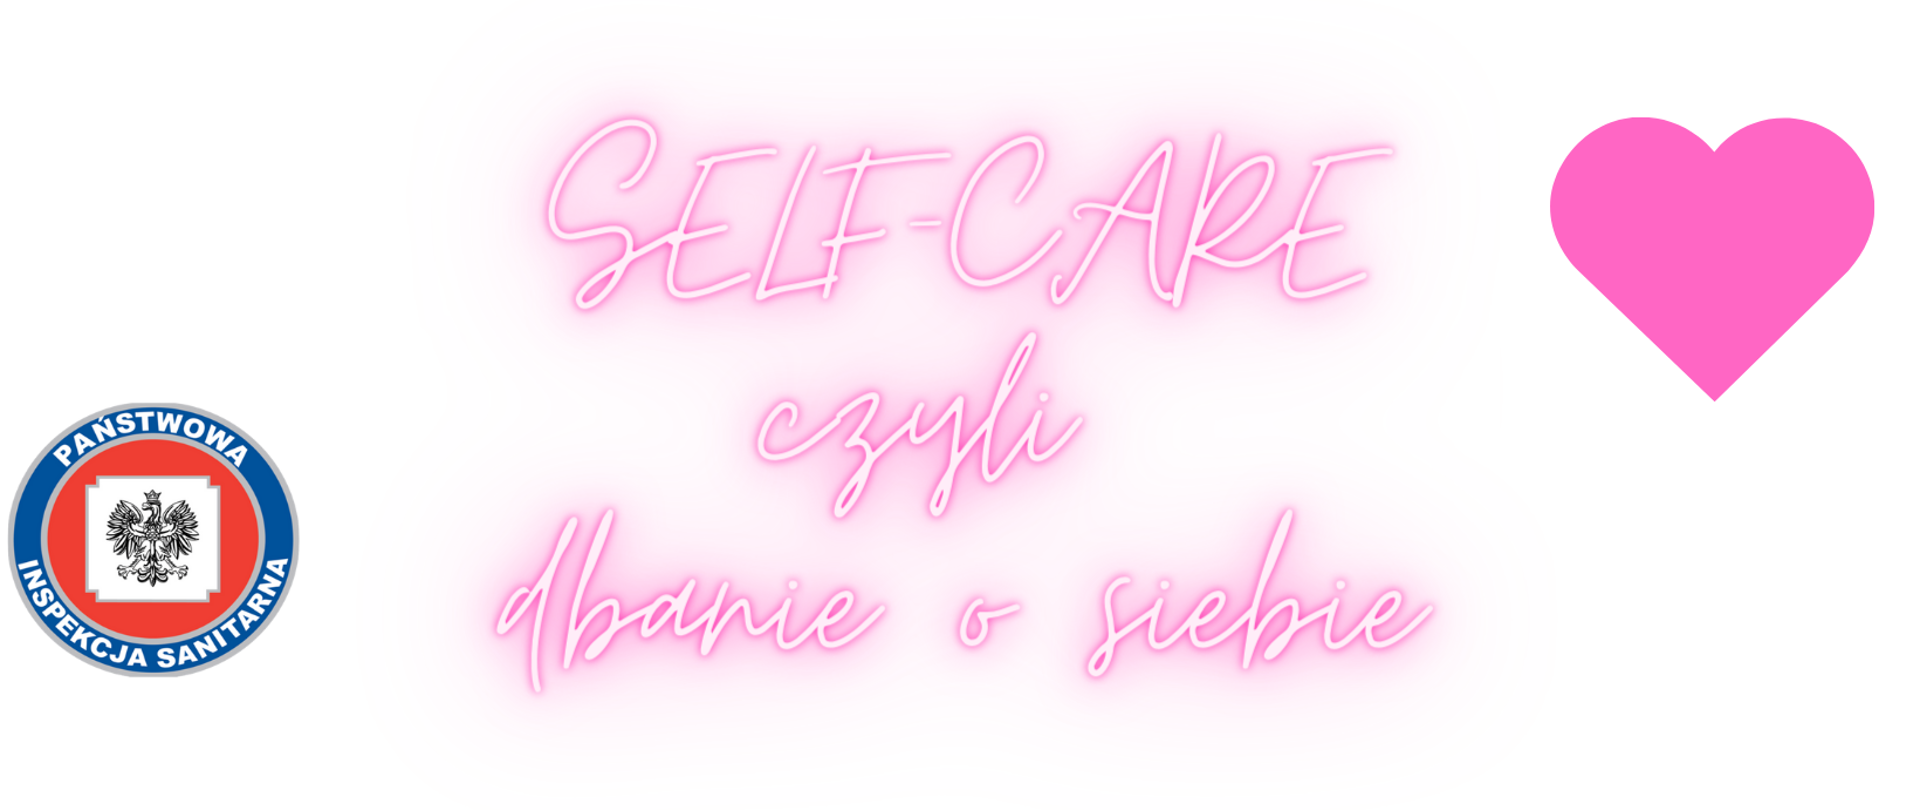 Self-care, czyli dbanie o siebie